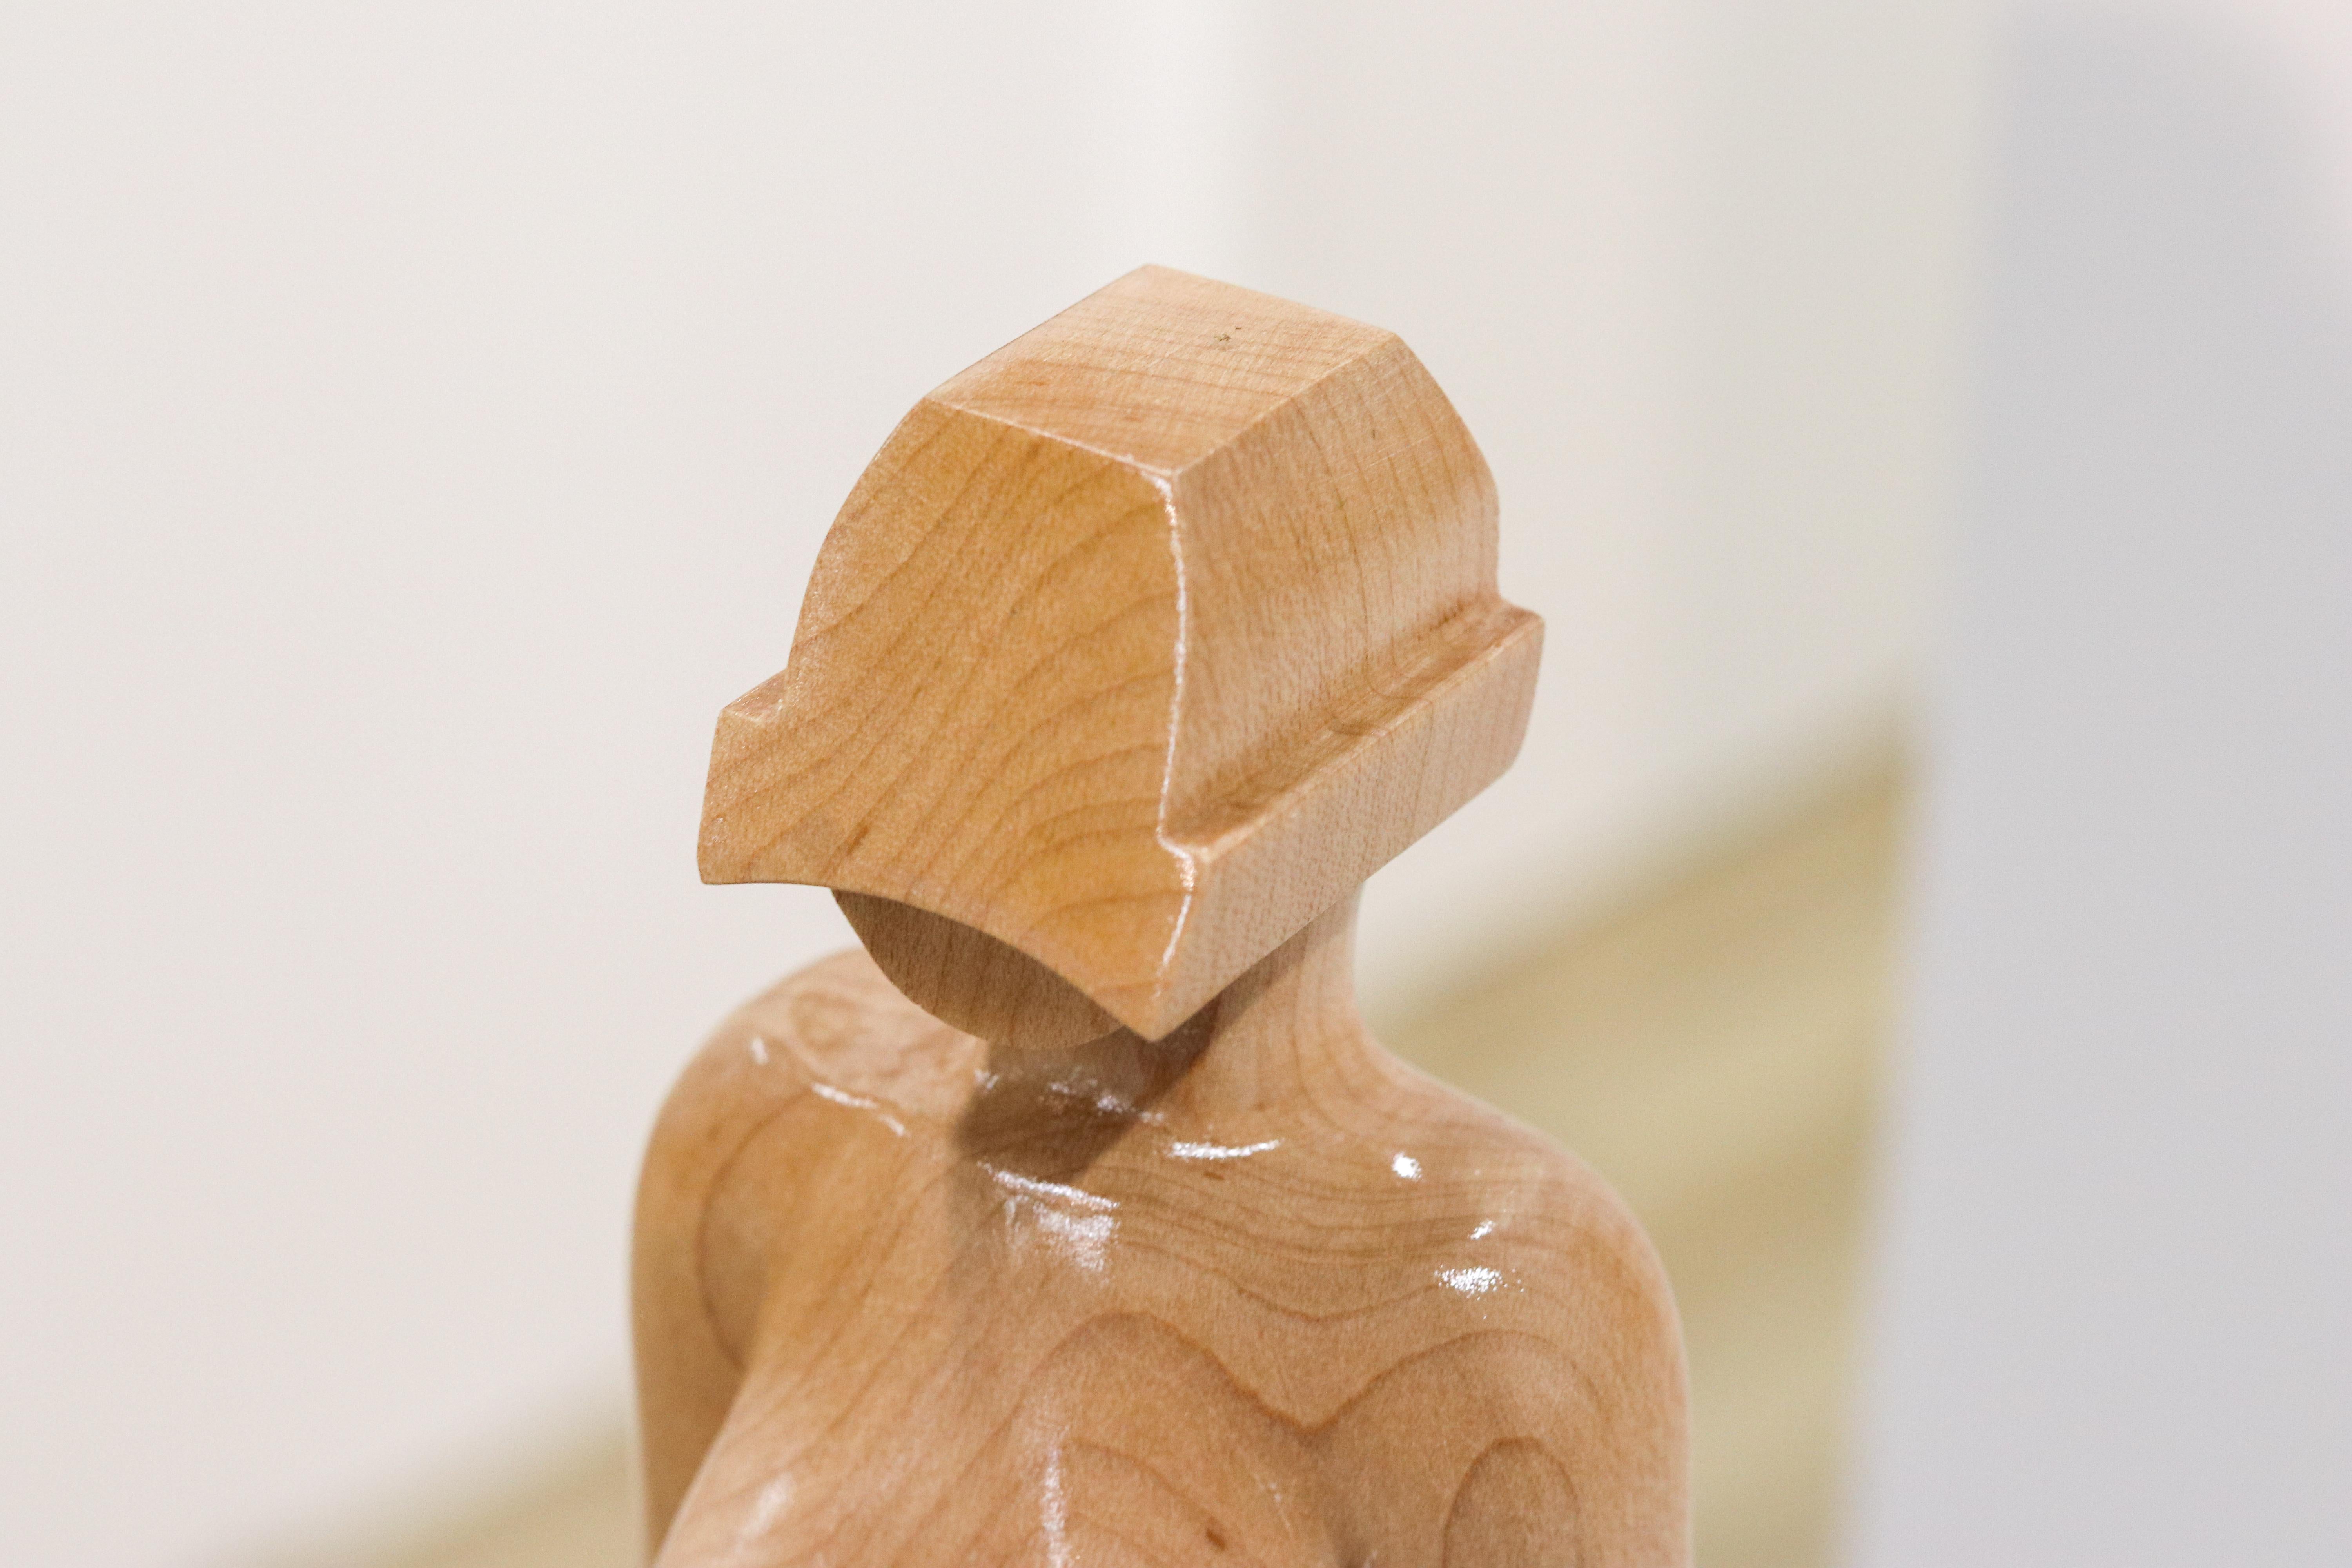 Diese Skulptur wurde von Jos de Wit geschaffen. Das Holz und alle anderen Materialien, die er für seine Skulpturen verwendet, nutzt er auch für den Bau von Instrumenten. Geigen, Kontrabässe, Gitarren, sie alle finden in seinem Atelier selbstgebaute